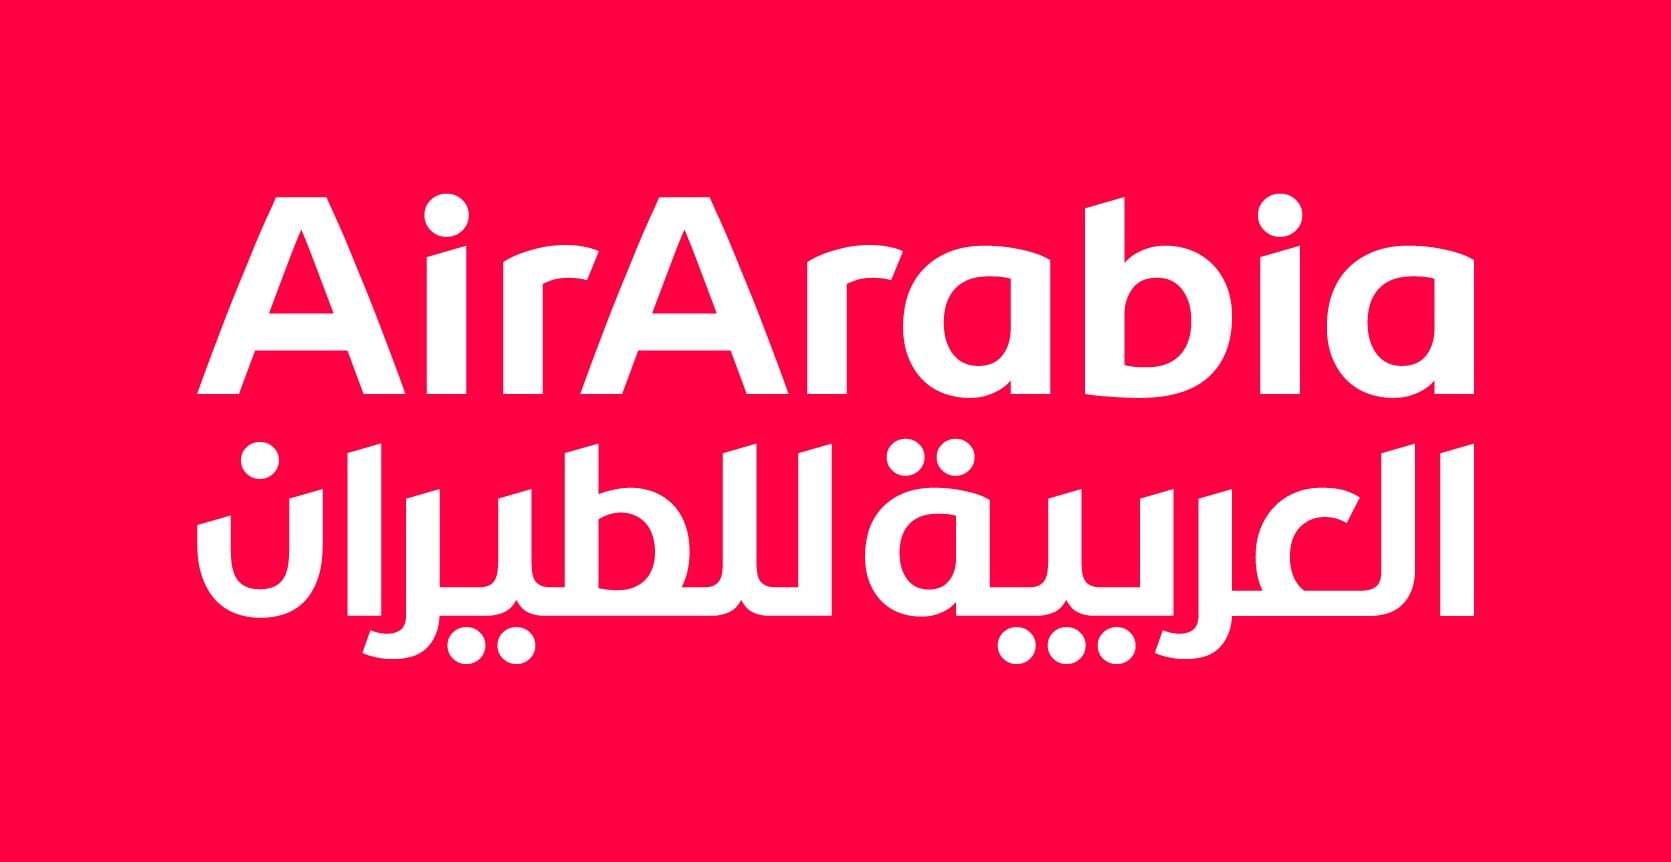 1920 airarabia logo bilingual vertical negative 666415